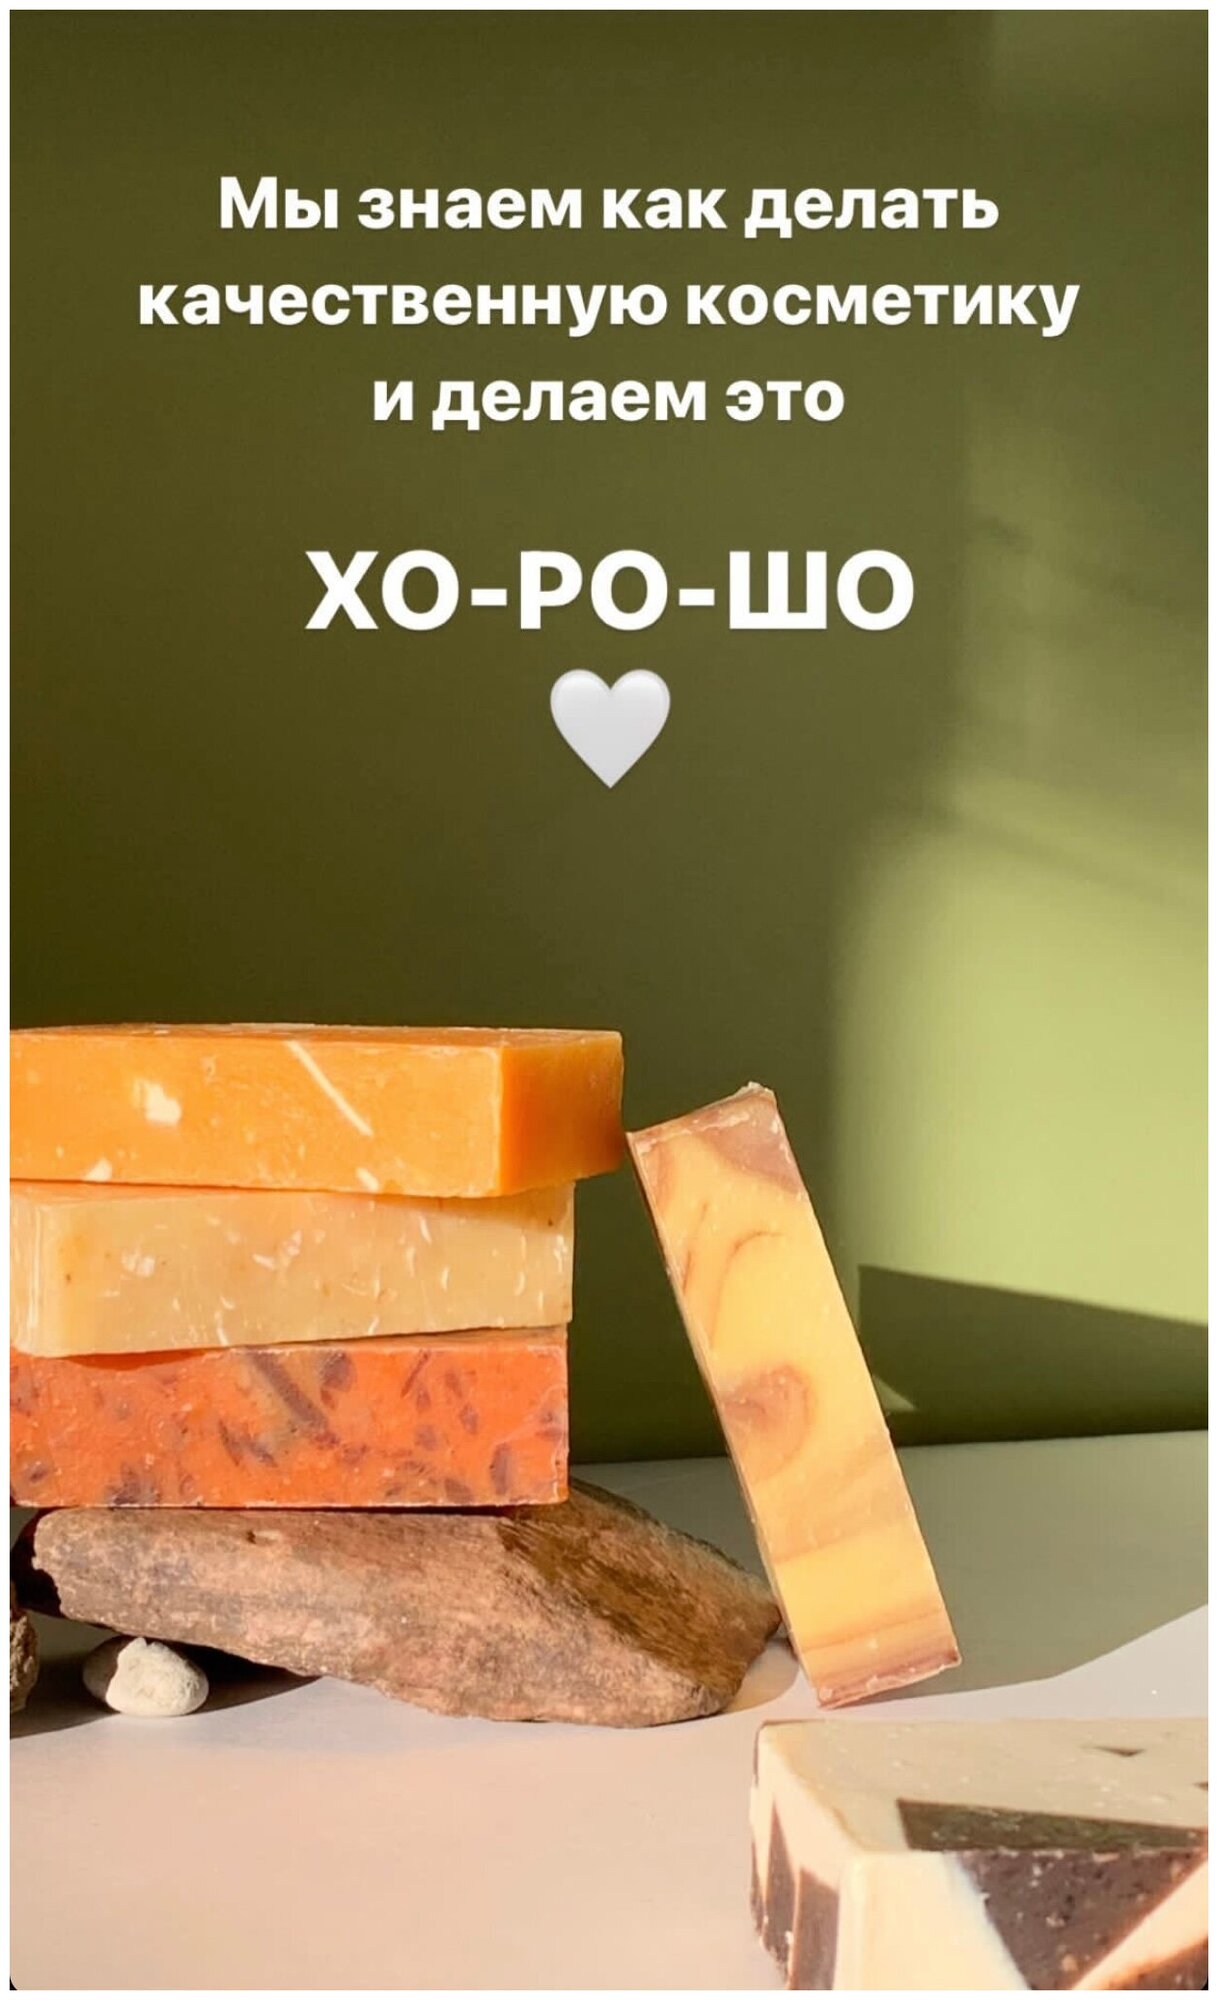 70 гр Натуральное мыло серии " Санкт-Петербург" Пчелиный воск -Грейп Гиттин